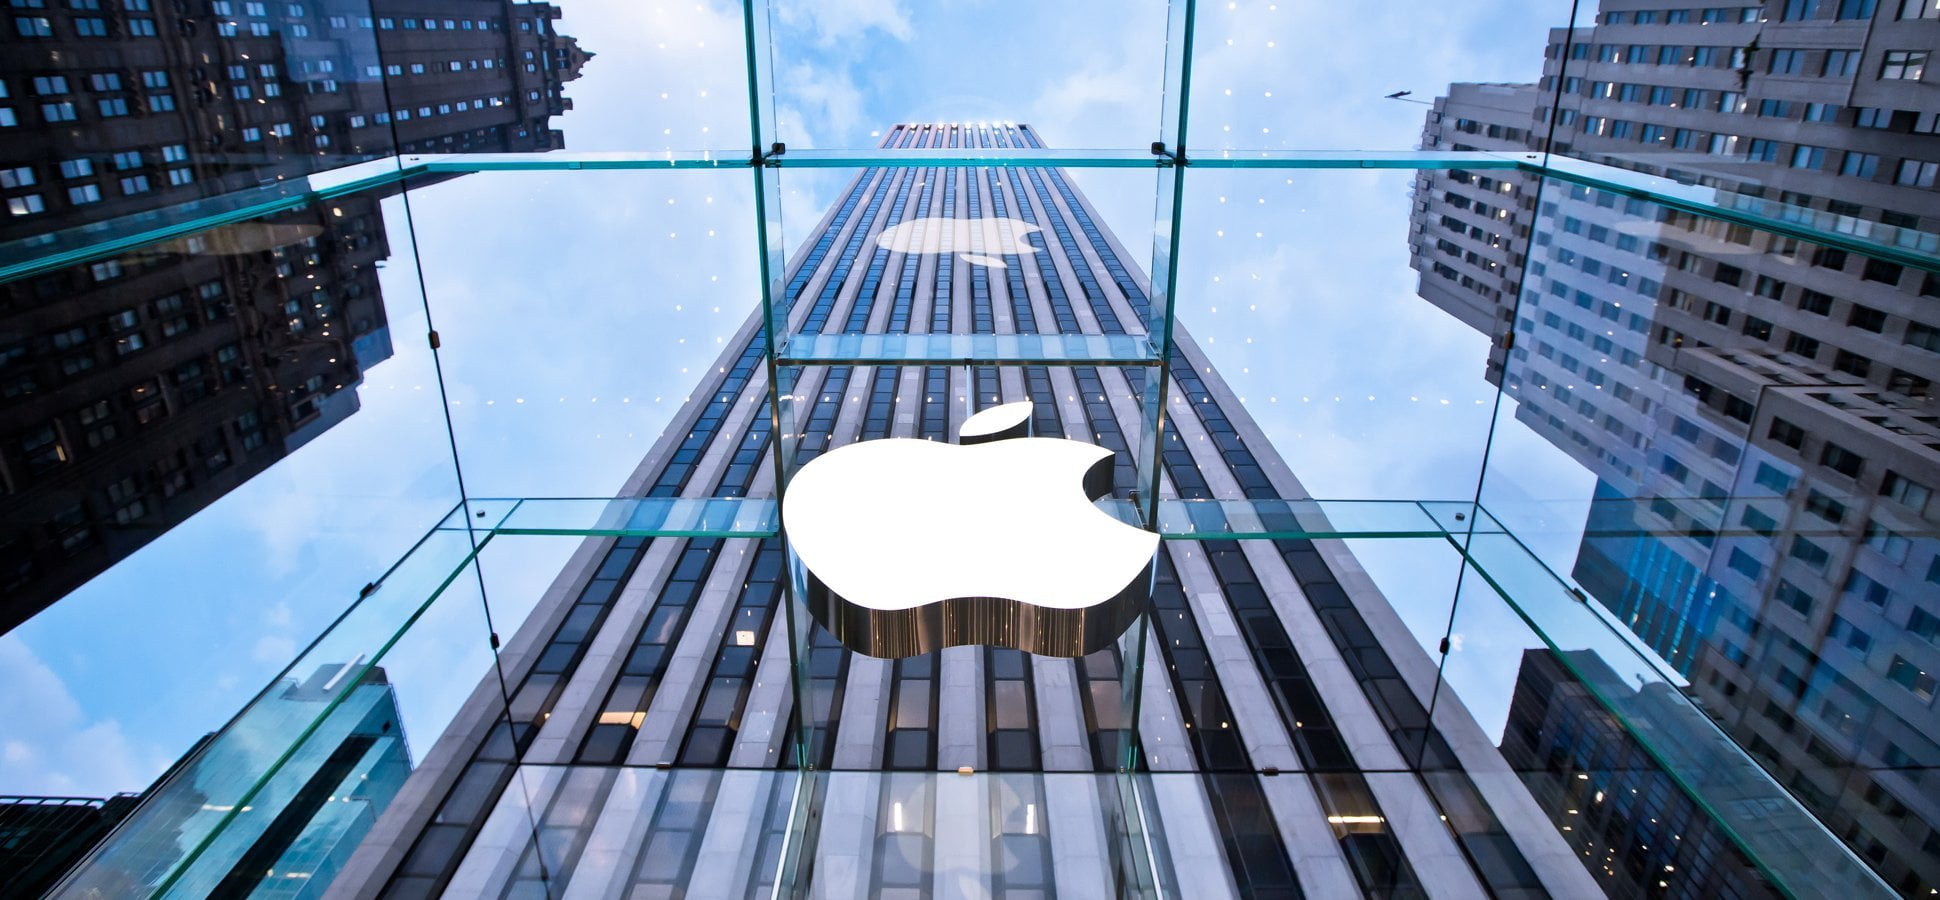 شركة Apple تخطط لطرح أصغر آيفون في تاريخها - تقني نت النكنولوجيا